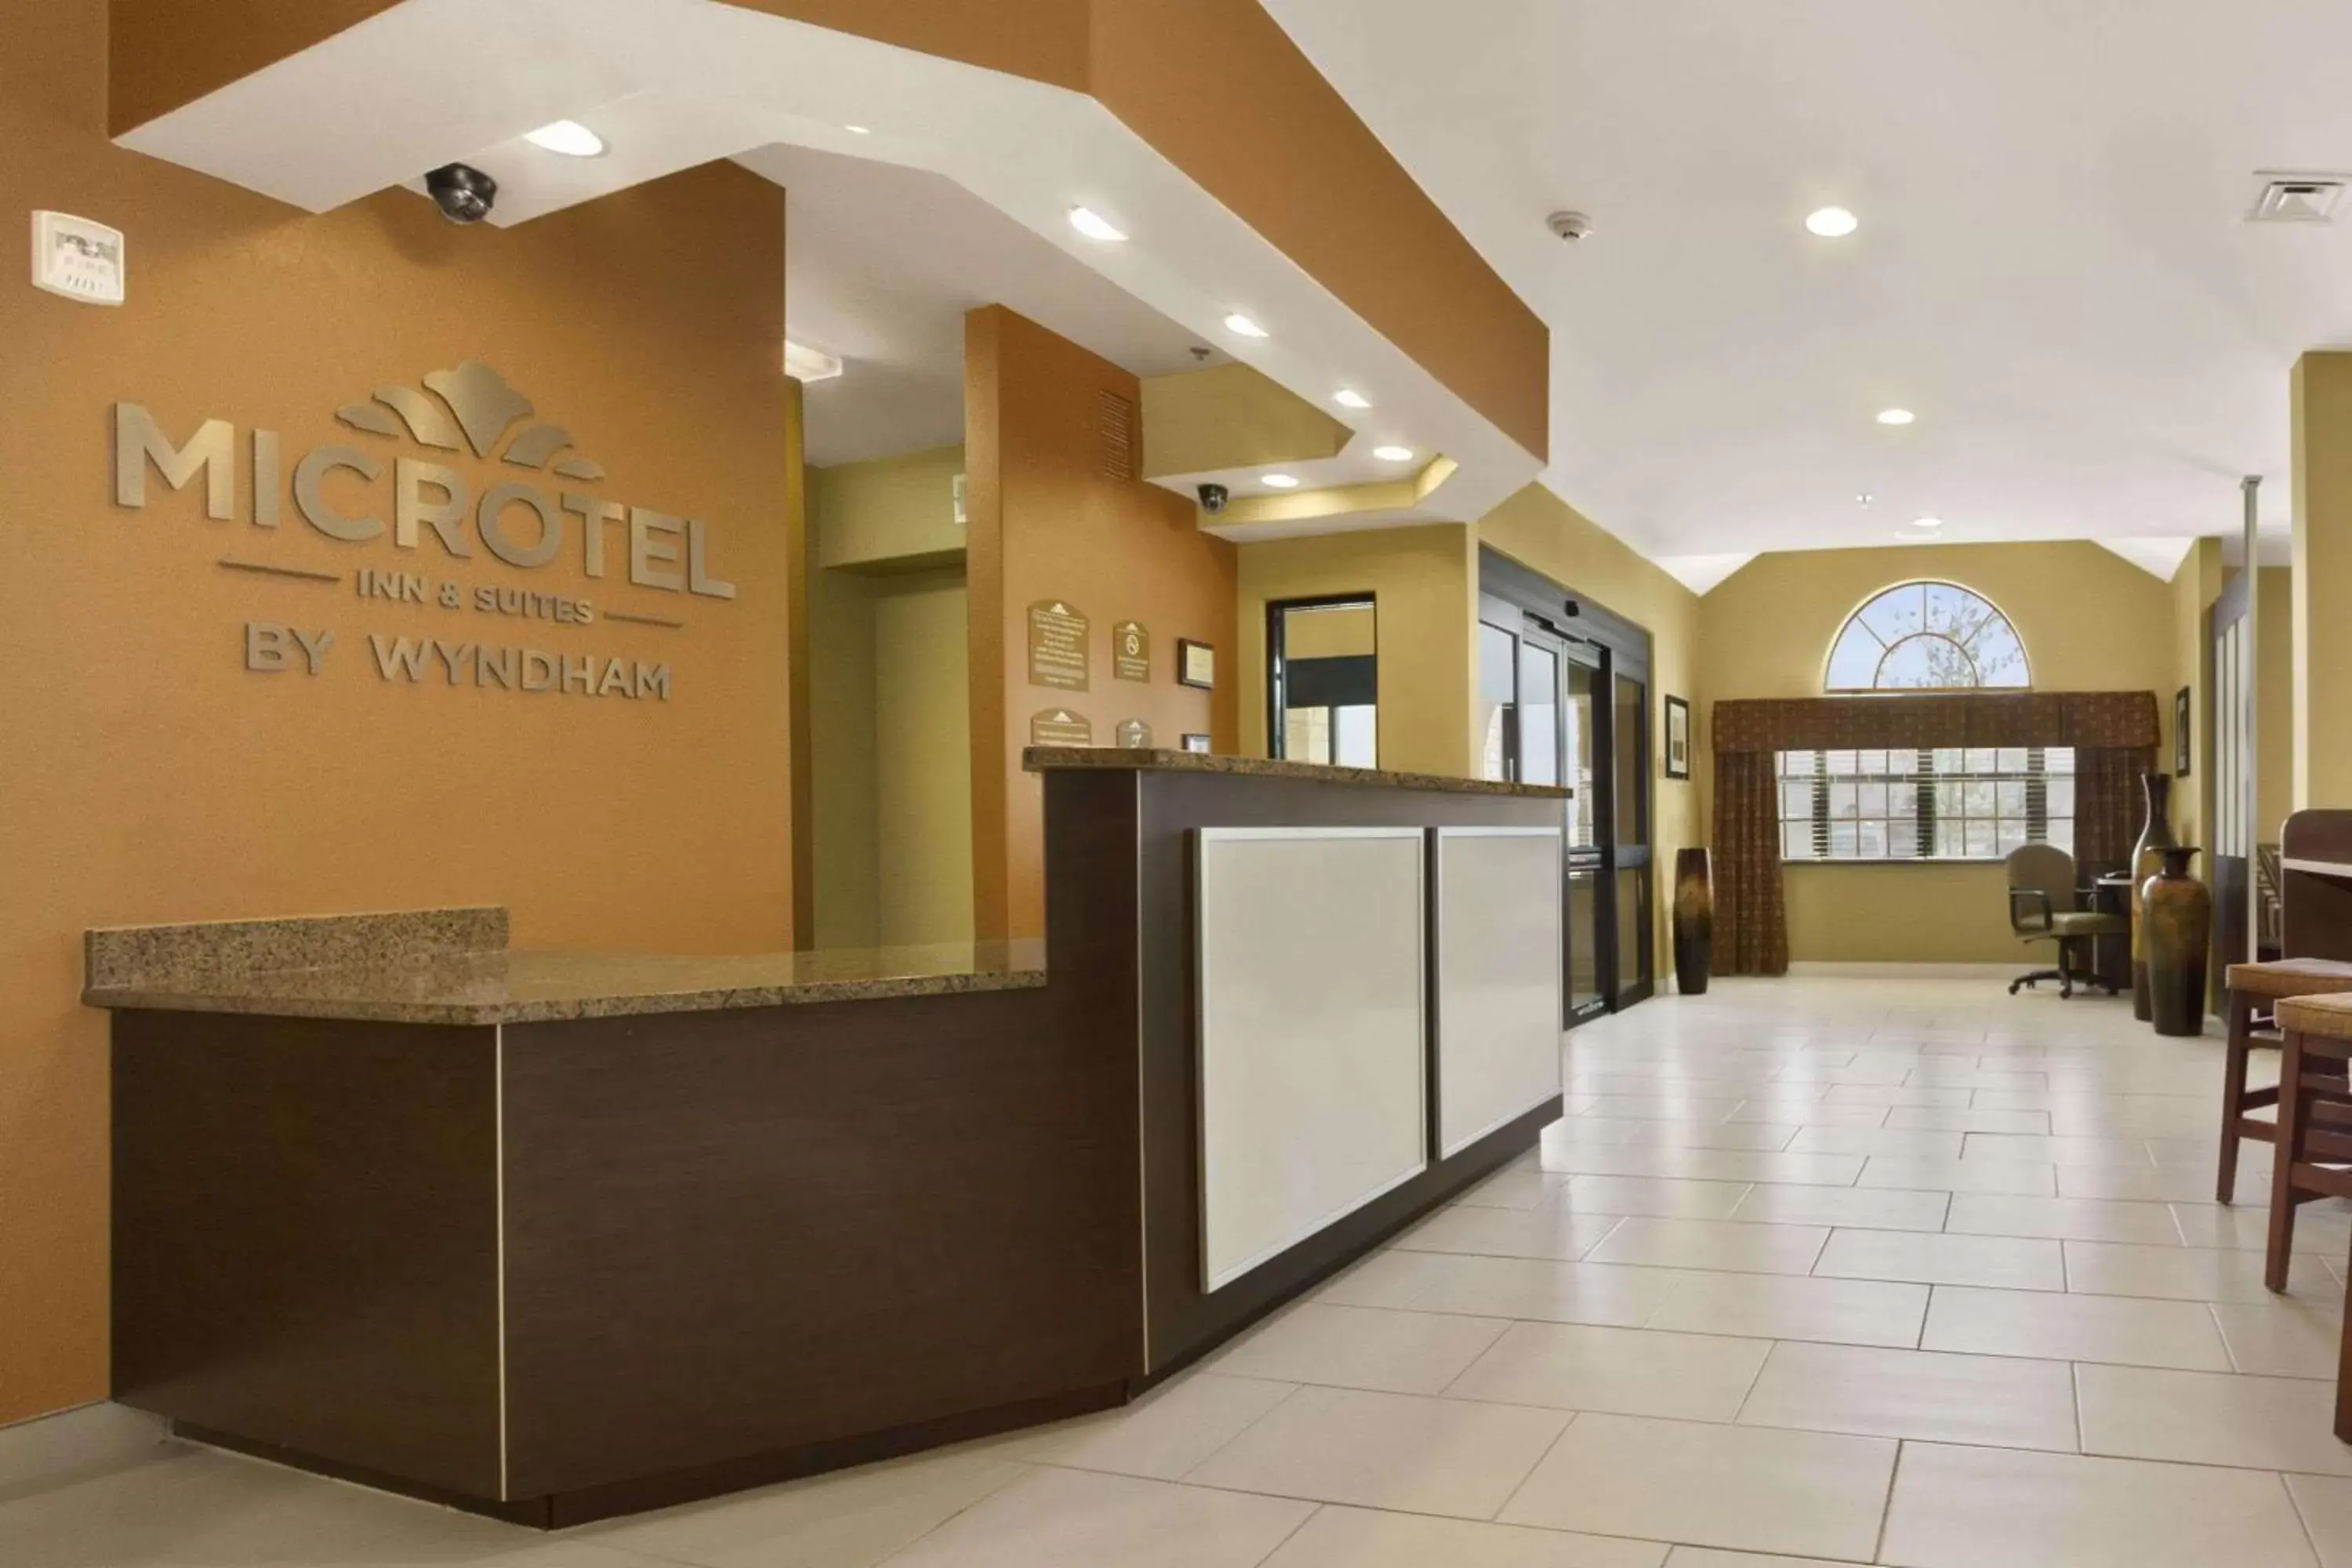 Lobby or reception, Lobby/Reception in Microtel Inn & Suites by Wyndham Buda Austin South